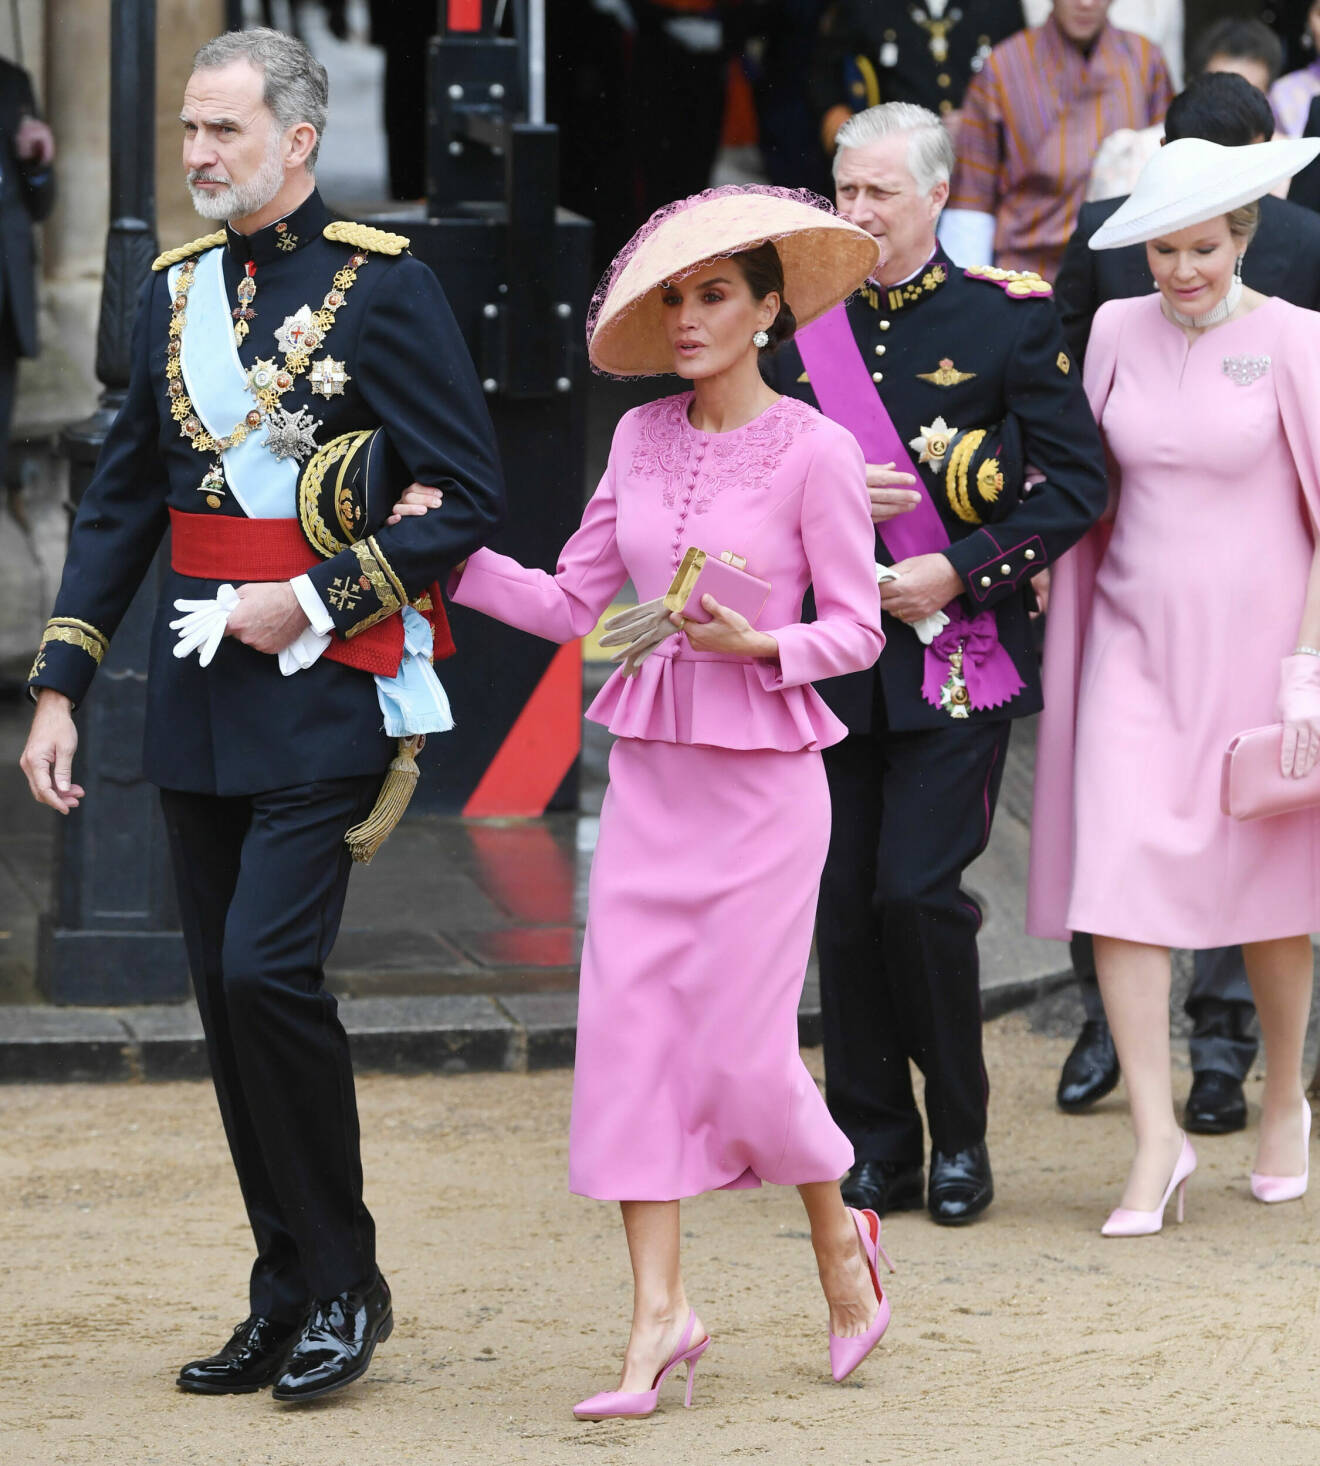 Drottning Letizia på kung Charles kröning klädd i rosa dräkt från Carolina Herrera